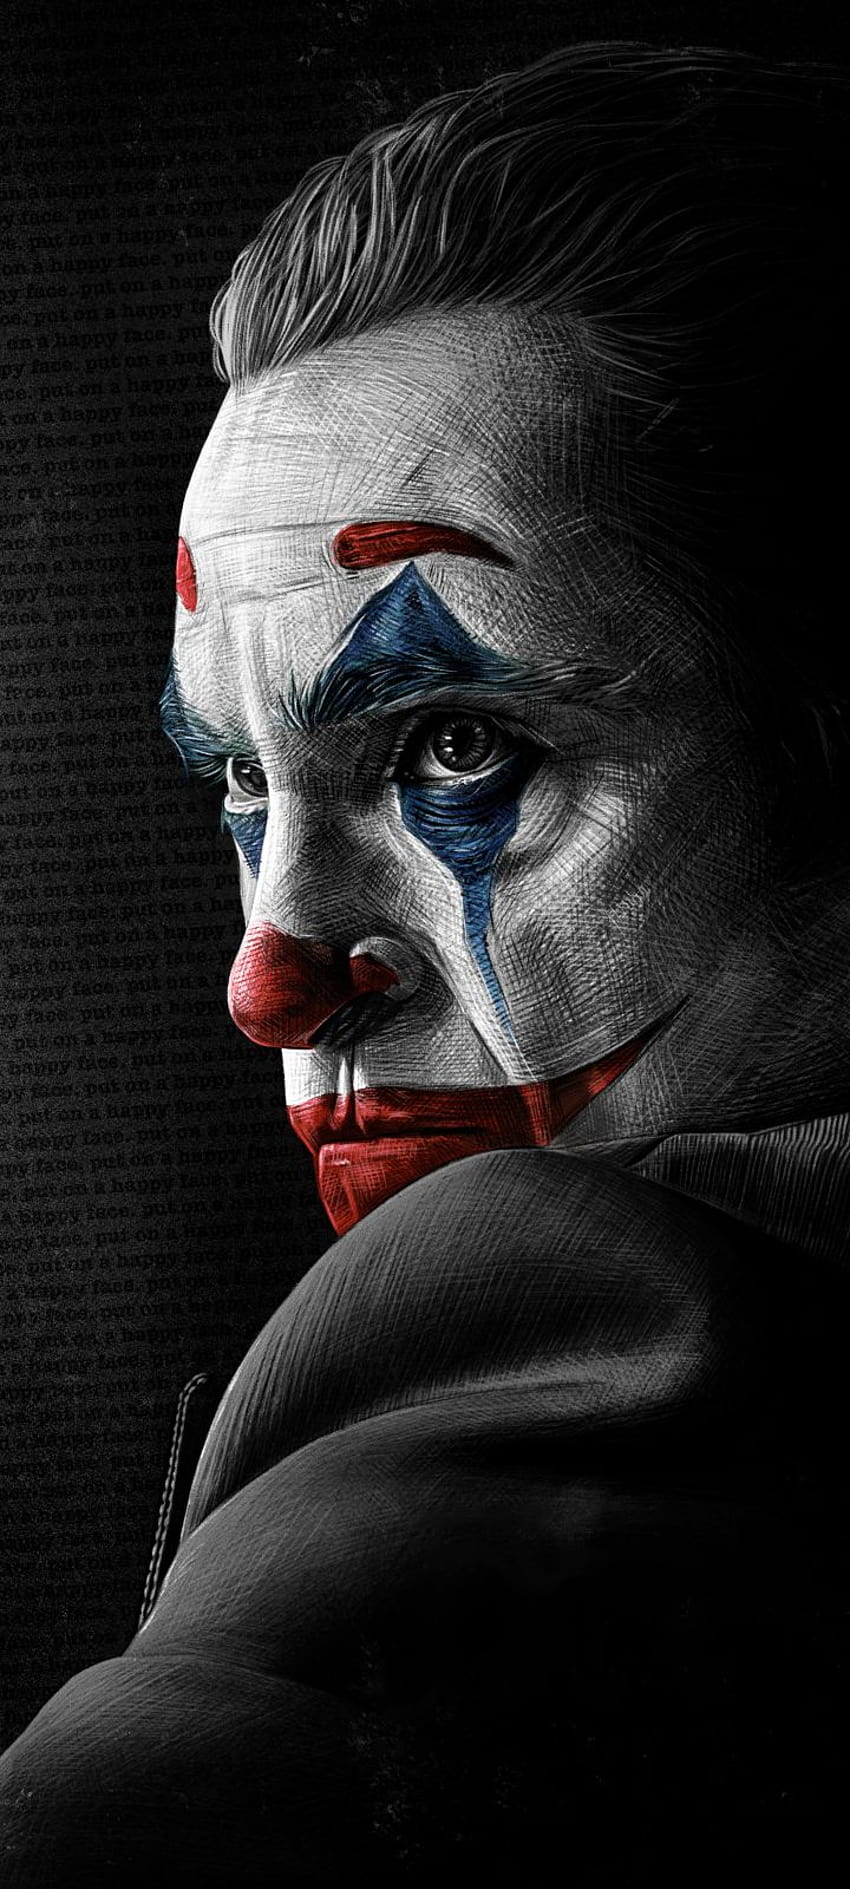 Chào mừng Joaquin Phoenix đến với vai Joker qua bộ hình nền độ phân giải 720x1600 sắc nét. Bạn sẽ được chiêm ngưỡng vẻ đẹp ma mị của nhân vật trong bộ phim ấn tượng này, tạo nên một trải nghiệm đặc biệt và khác biệt cho màn hình điện thoại của mình.